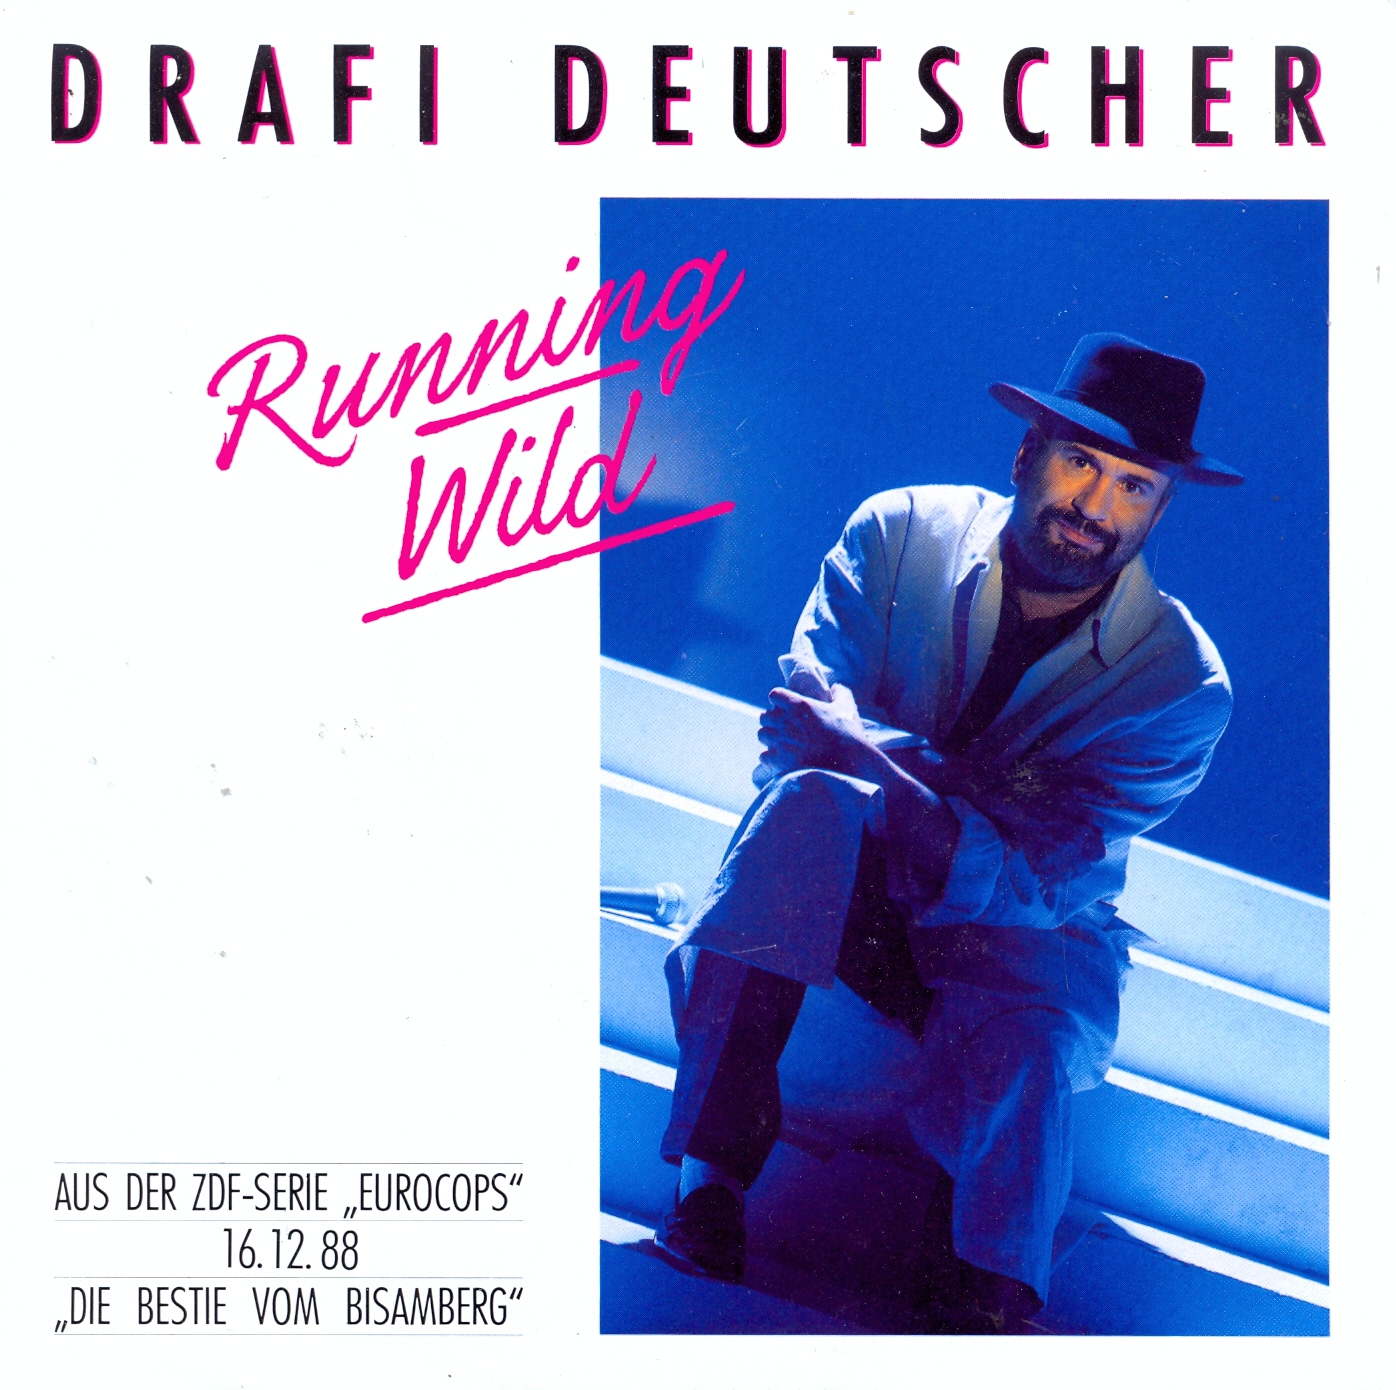 Deutscher Drafi - Running wild